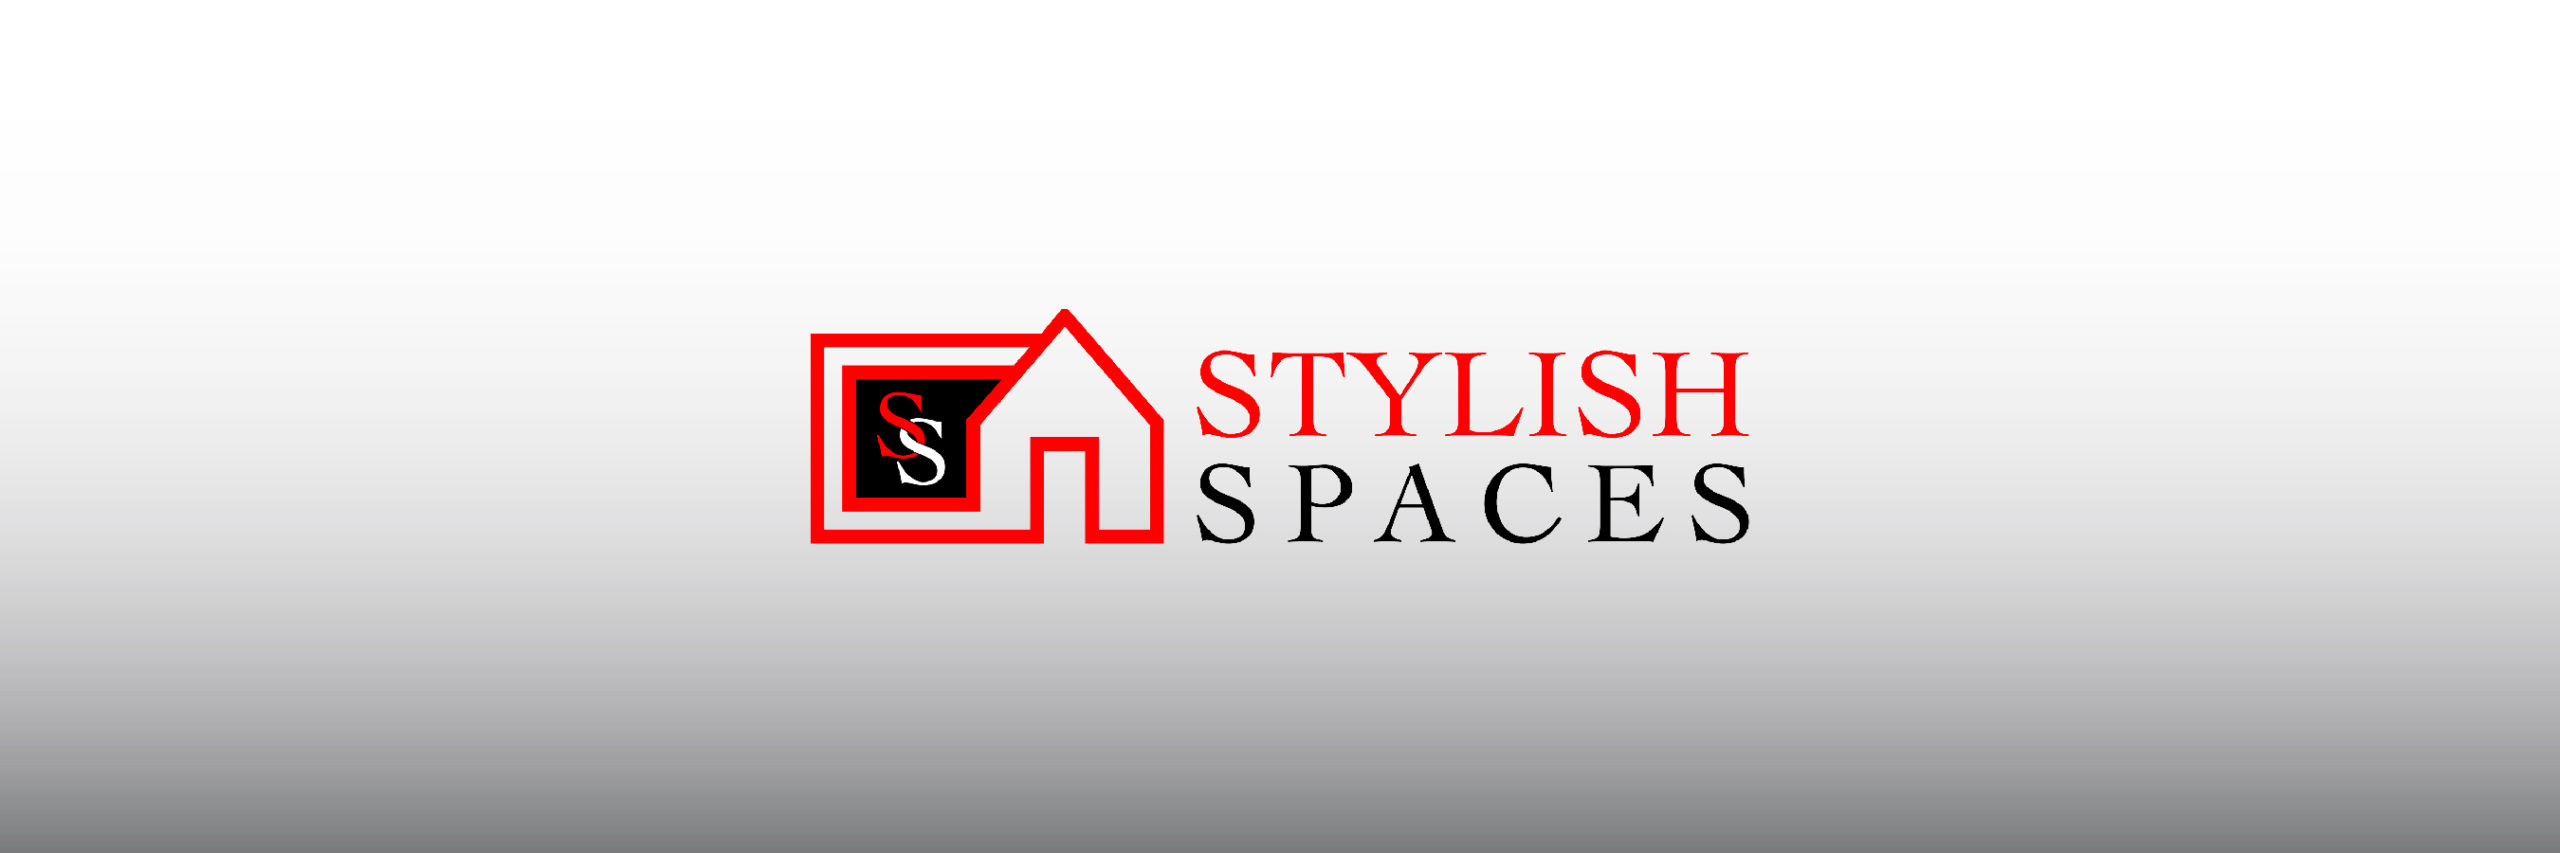 Logo Design - Stylish Spaces